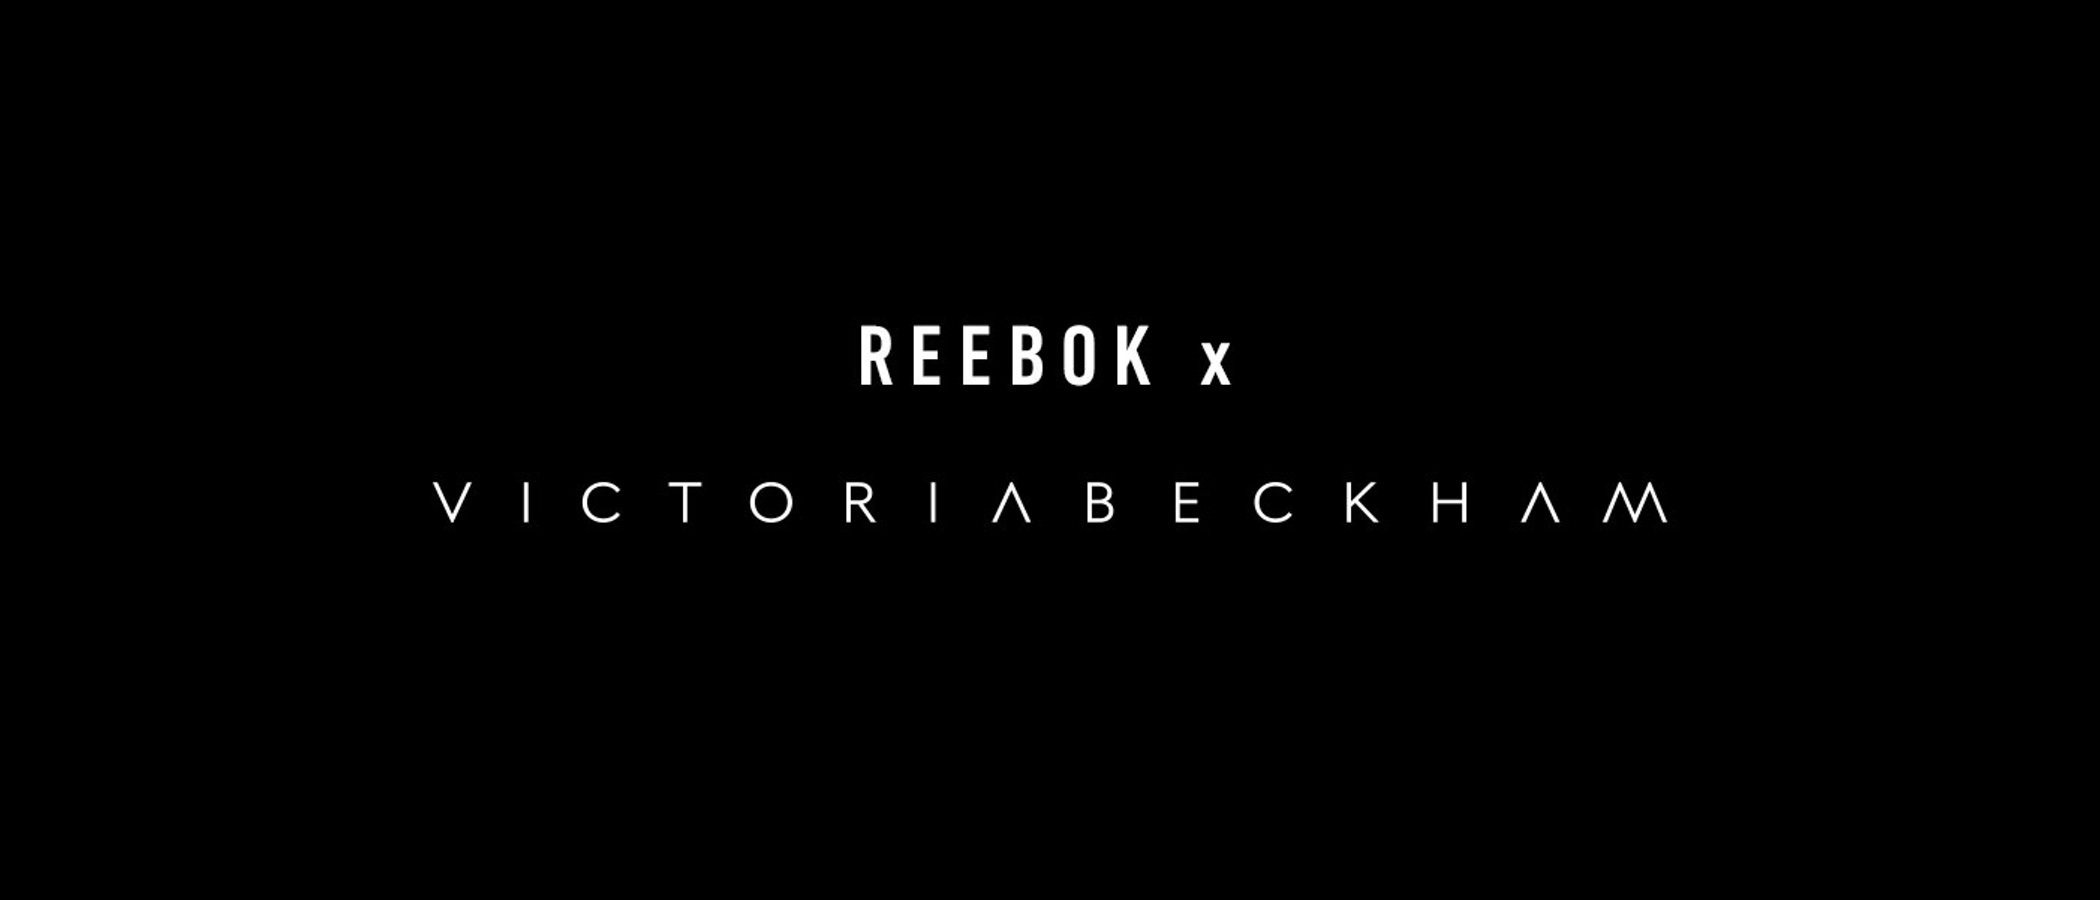 Victoria Beckham da nuevas pistas sobre su colaboración con Reebok